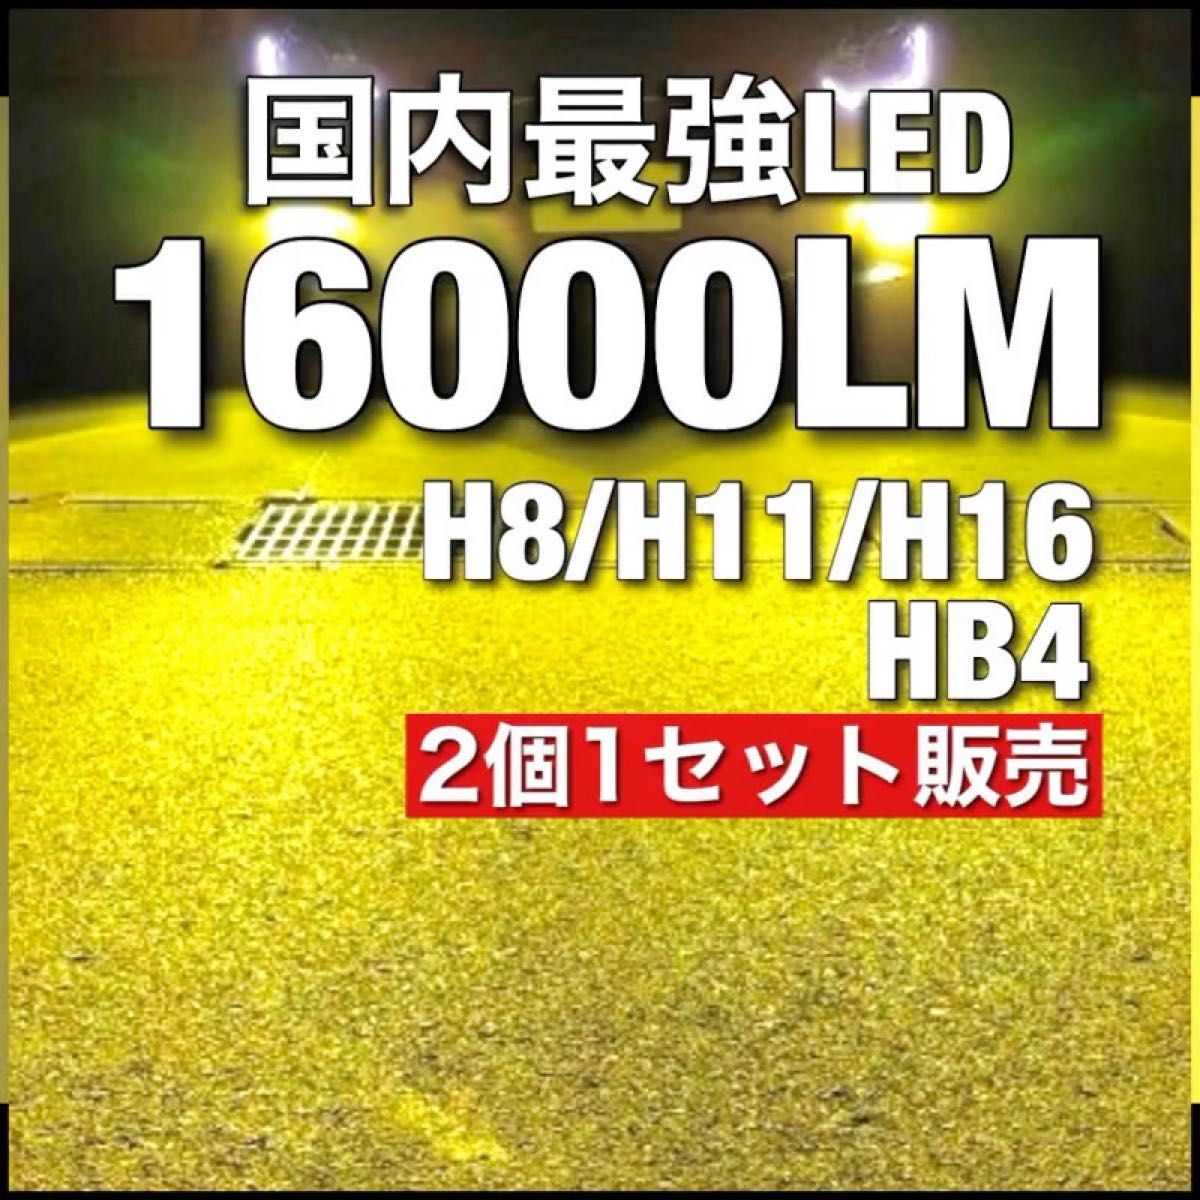 令和最新 LEDヘッド/フォグライトセットH8/H11/H16 HB4 新車検対応 3000k 16000LM 取付簡単 イエロー